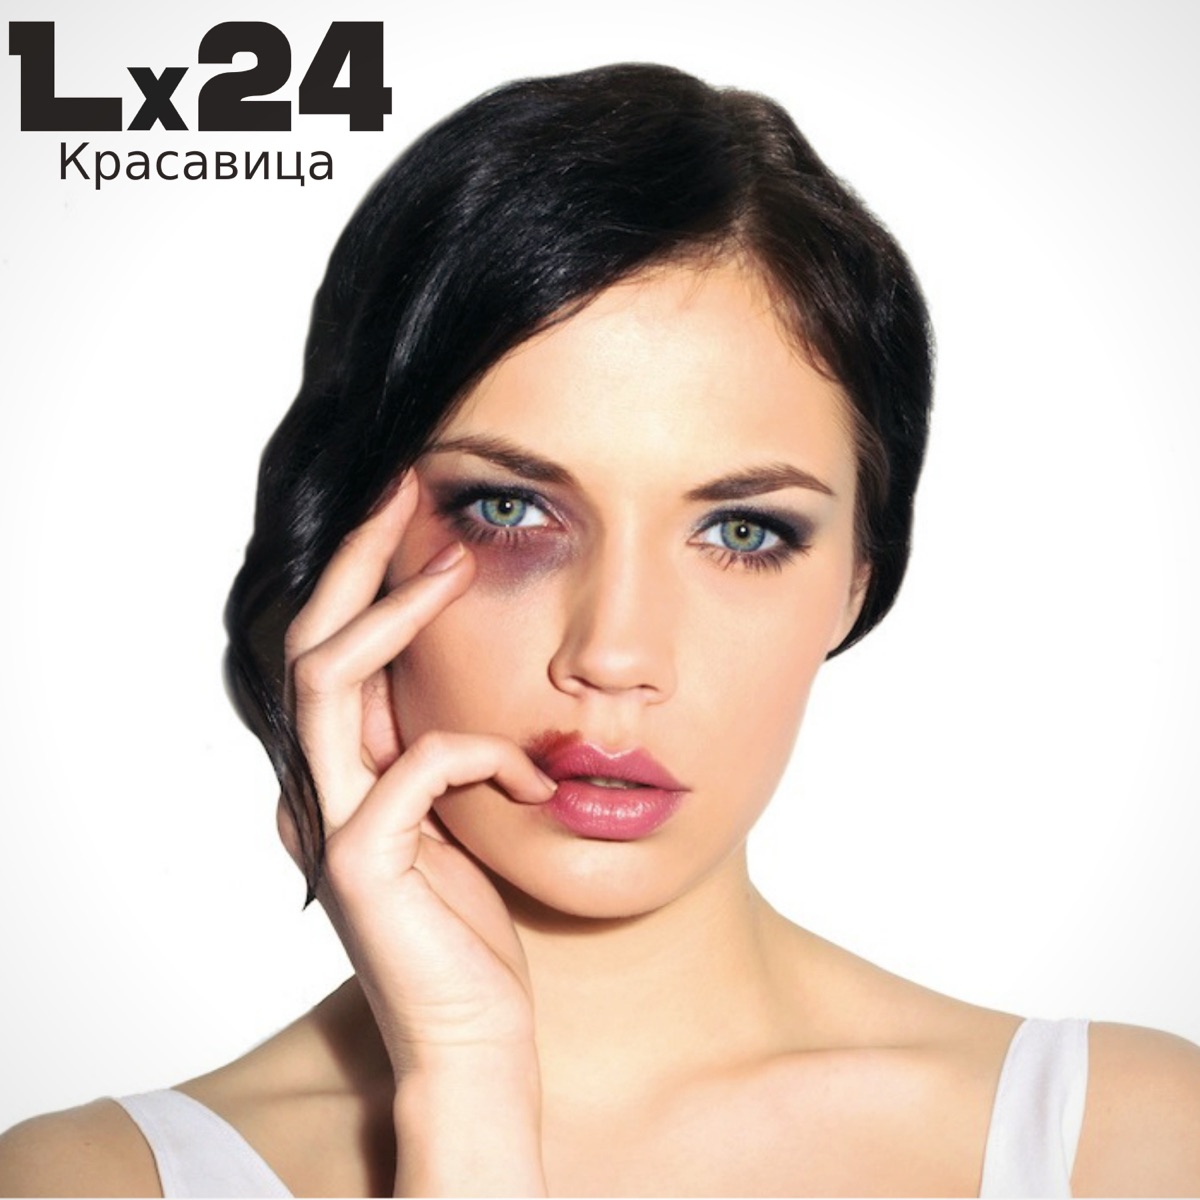 Lx24 – Красавица: Слушать И Скачать Mp3 Песню